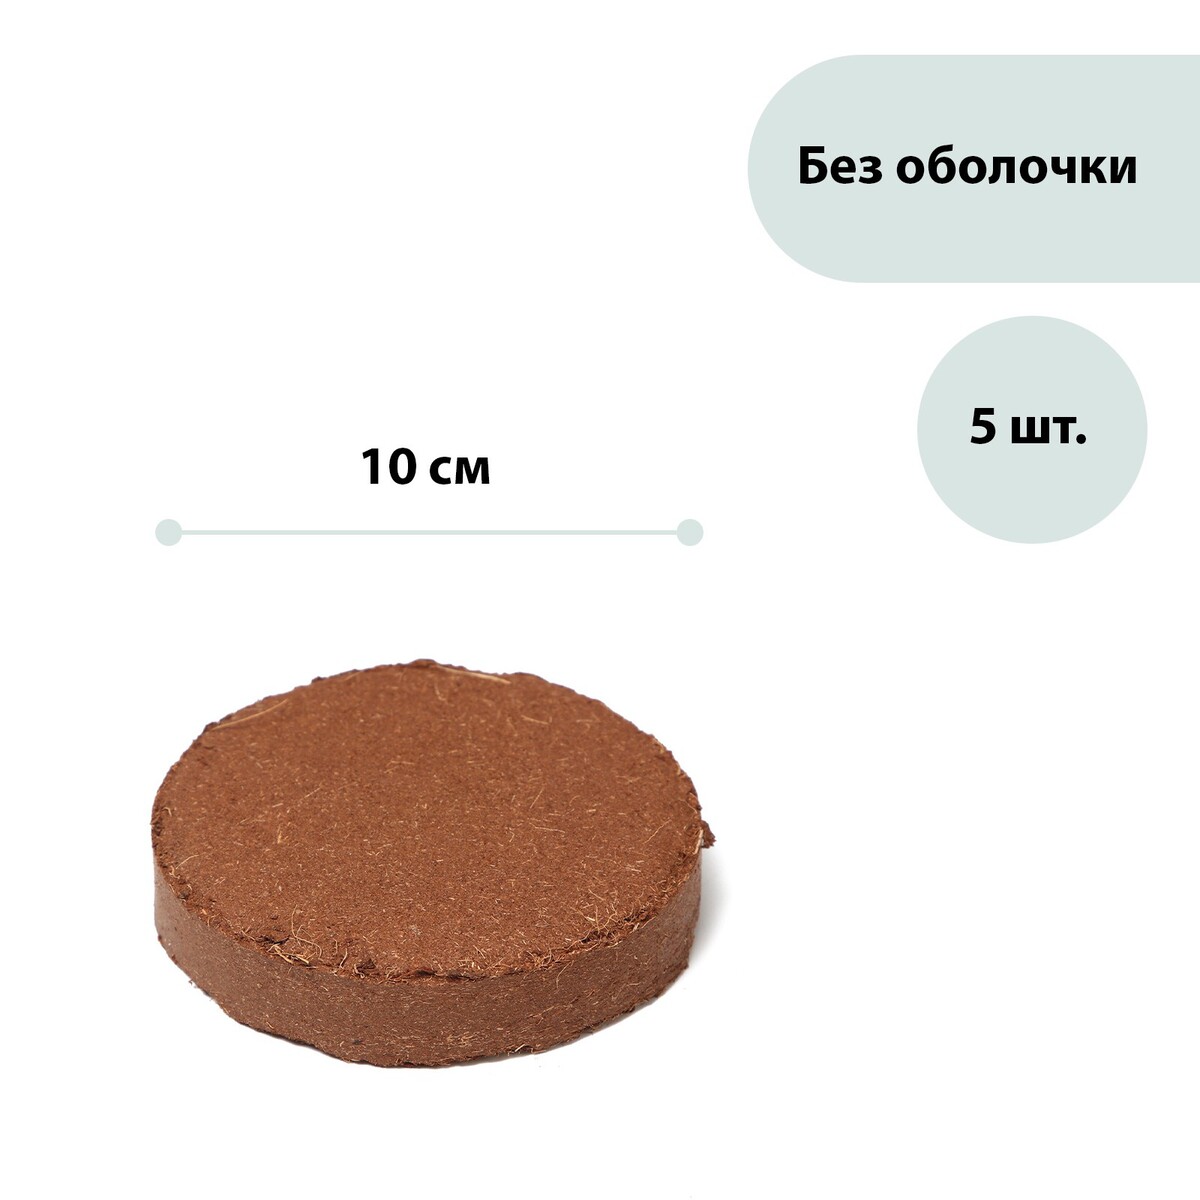 Субстрат кокосовый в таблетках, 4,5 л, d = 10 см, набор 5 шт., без оболочки, greengo поплавок дозатор акула для химии в таблетках kokido aq12217